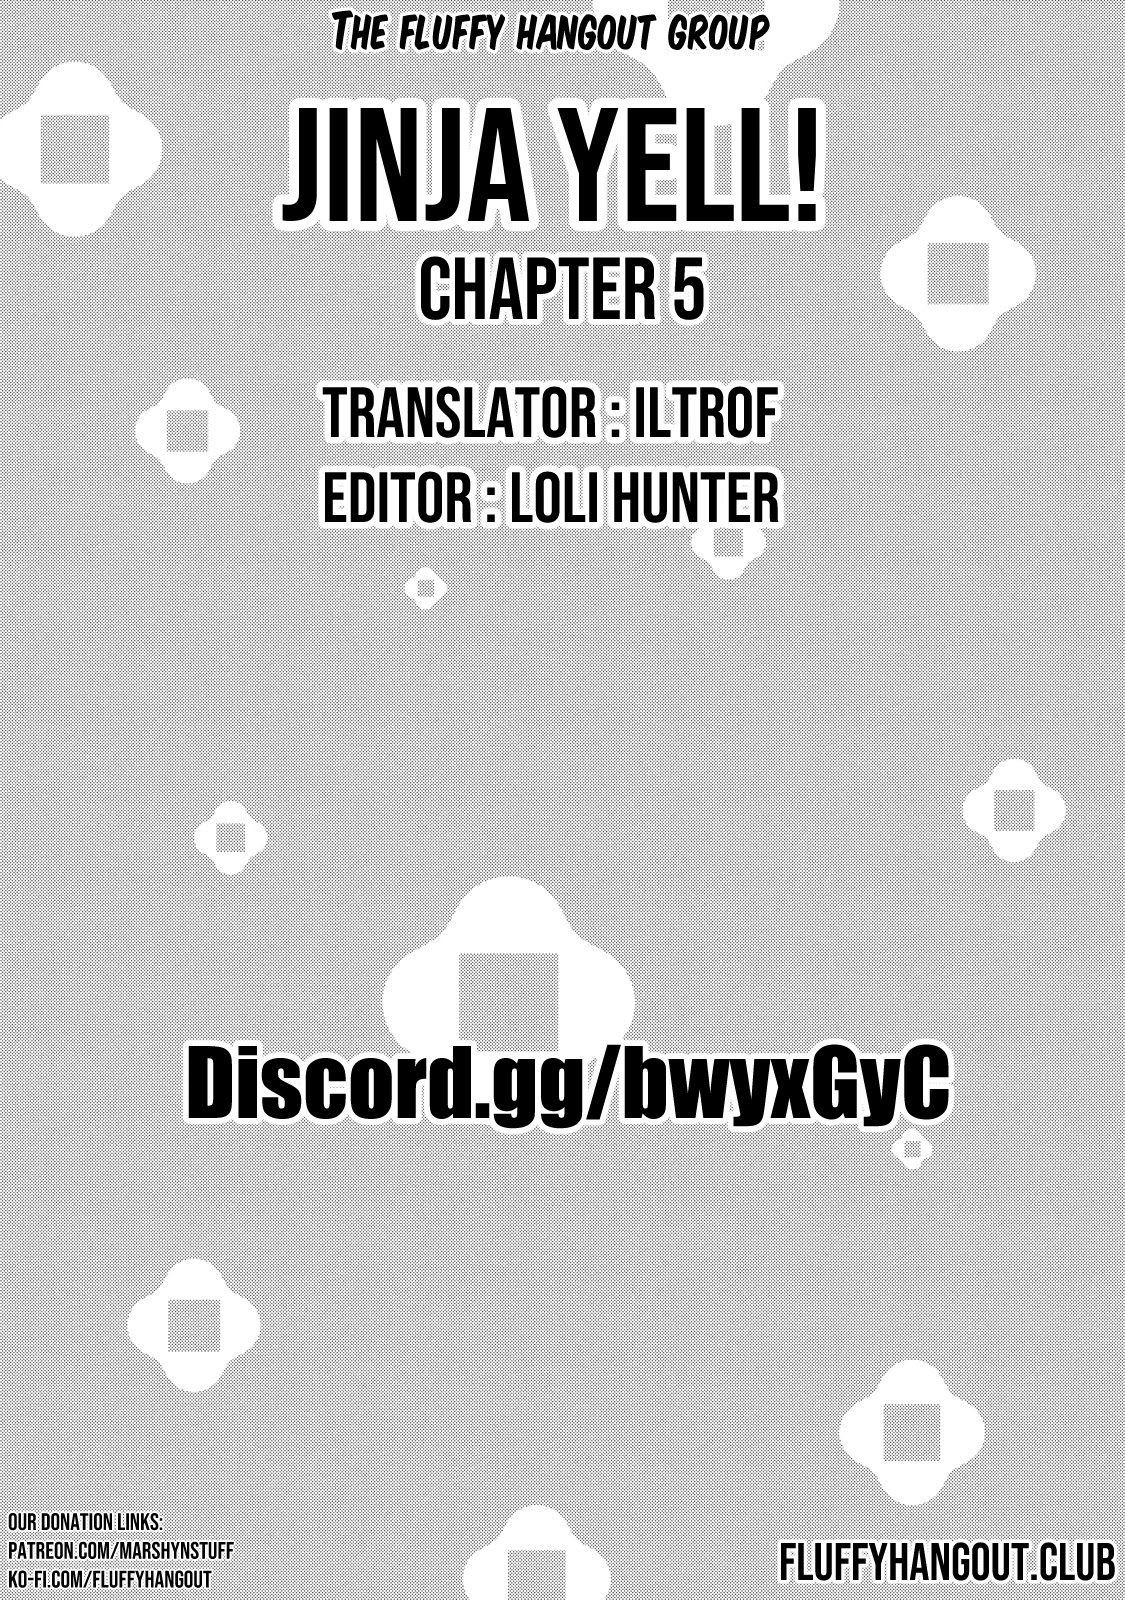 Jinja Yell! Chapter 5 #25